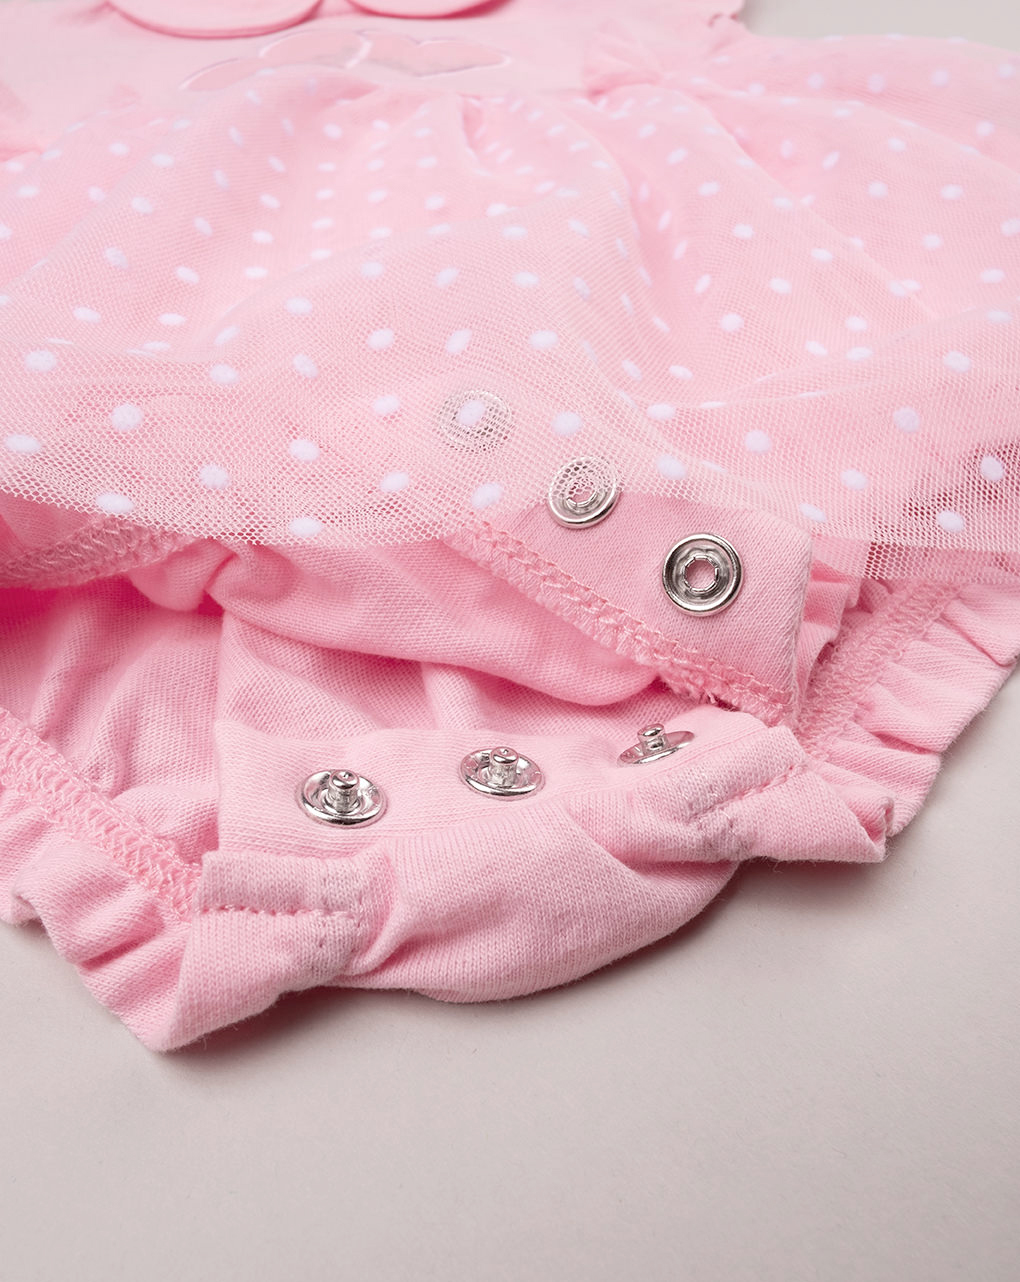 Pelele de bebé recién nacido rosa con tul - Prénatal